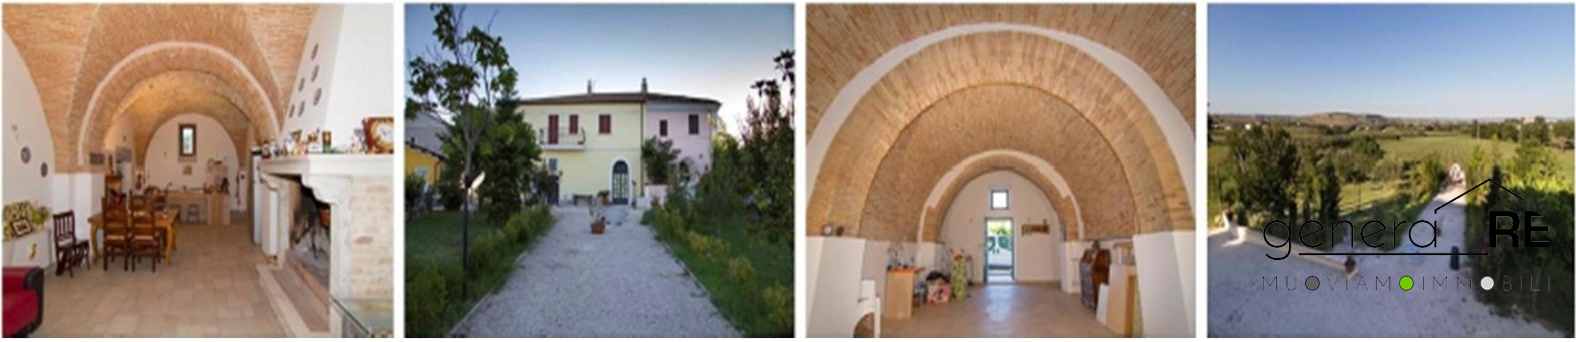 Villa in vendita a Civitaquana, 6 locali, prezzo € 240.000 | PortaleAgenzieImmobiliari.it